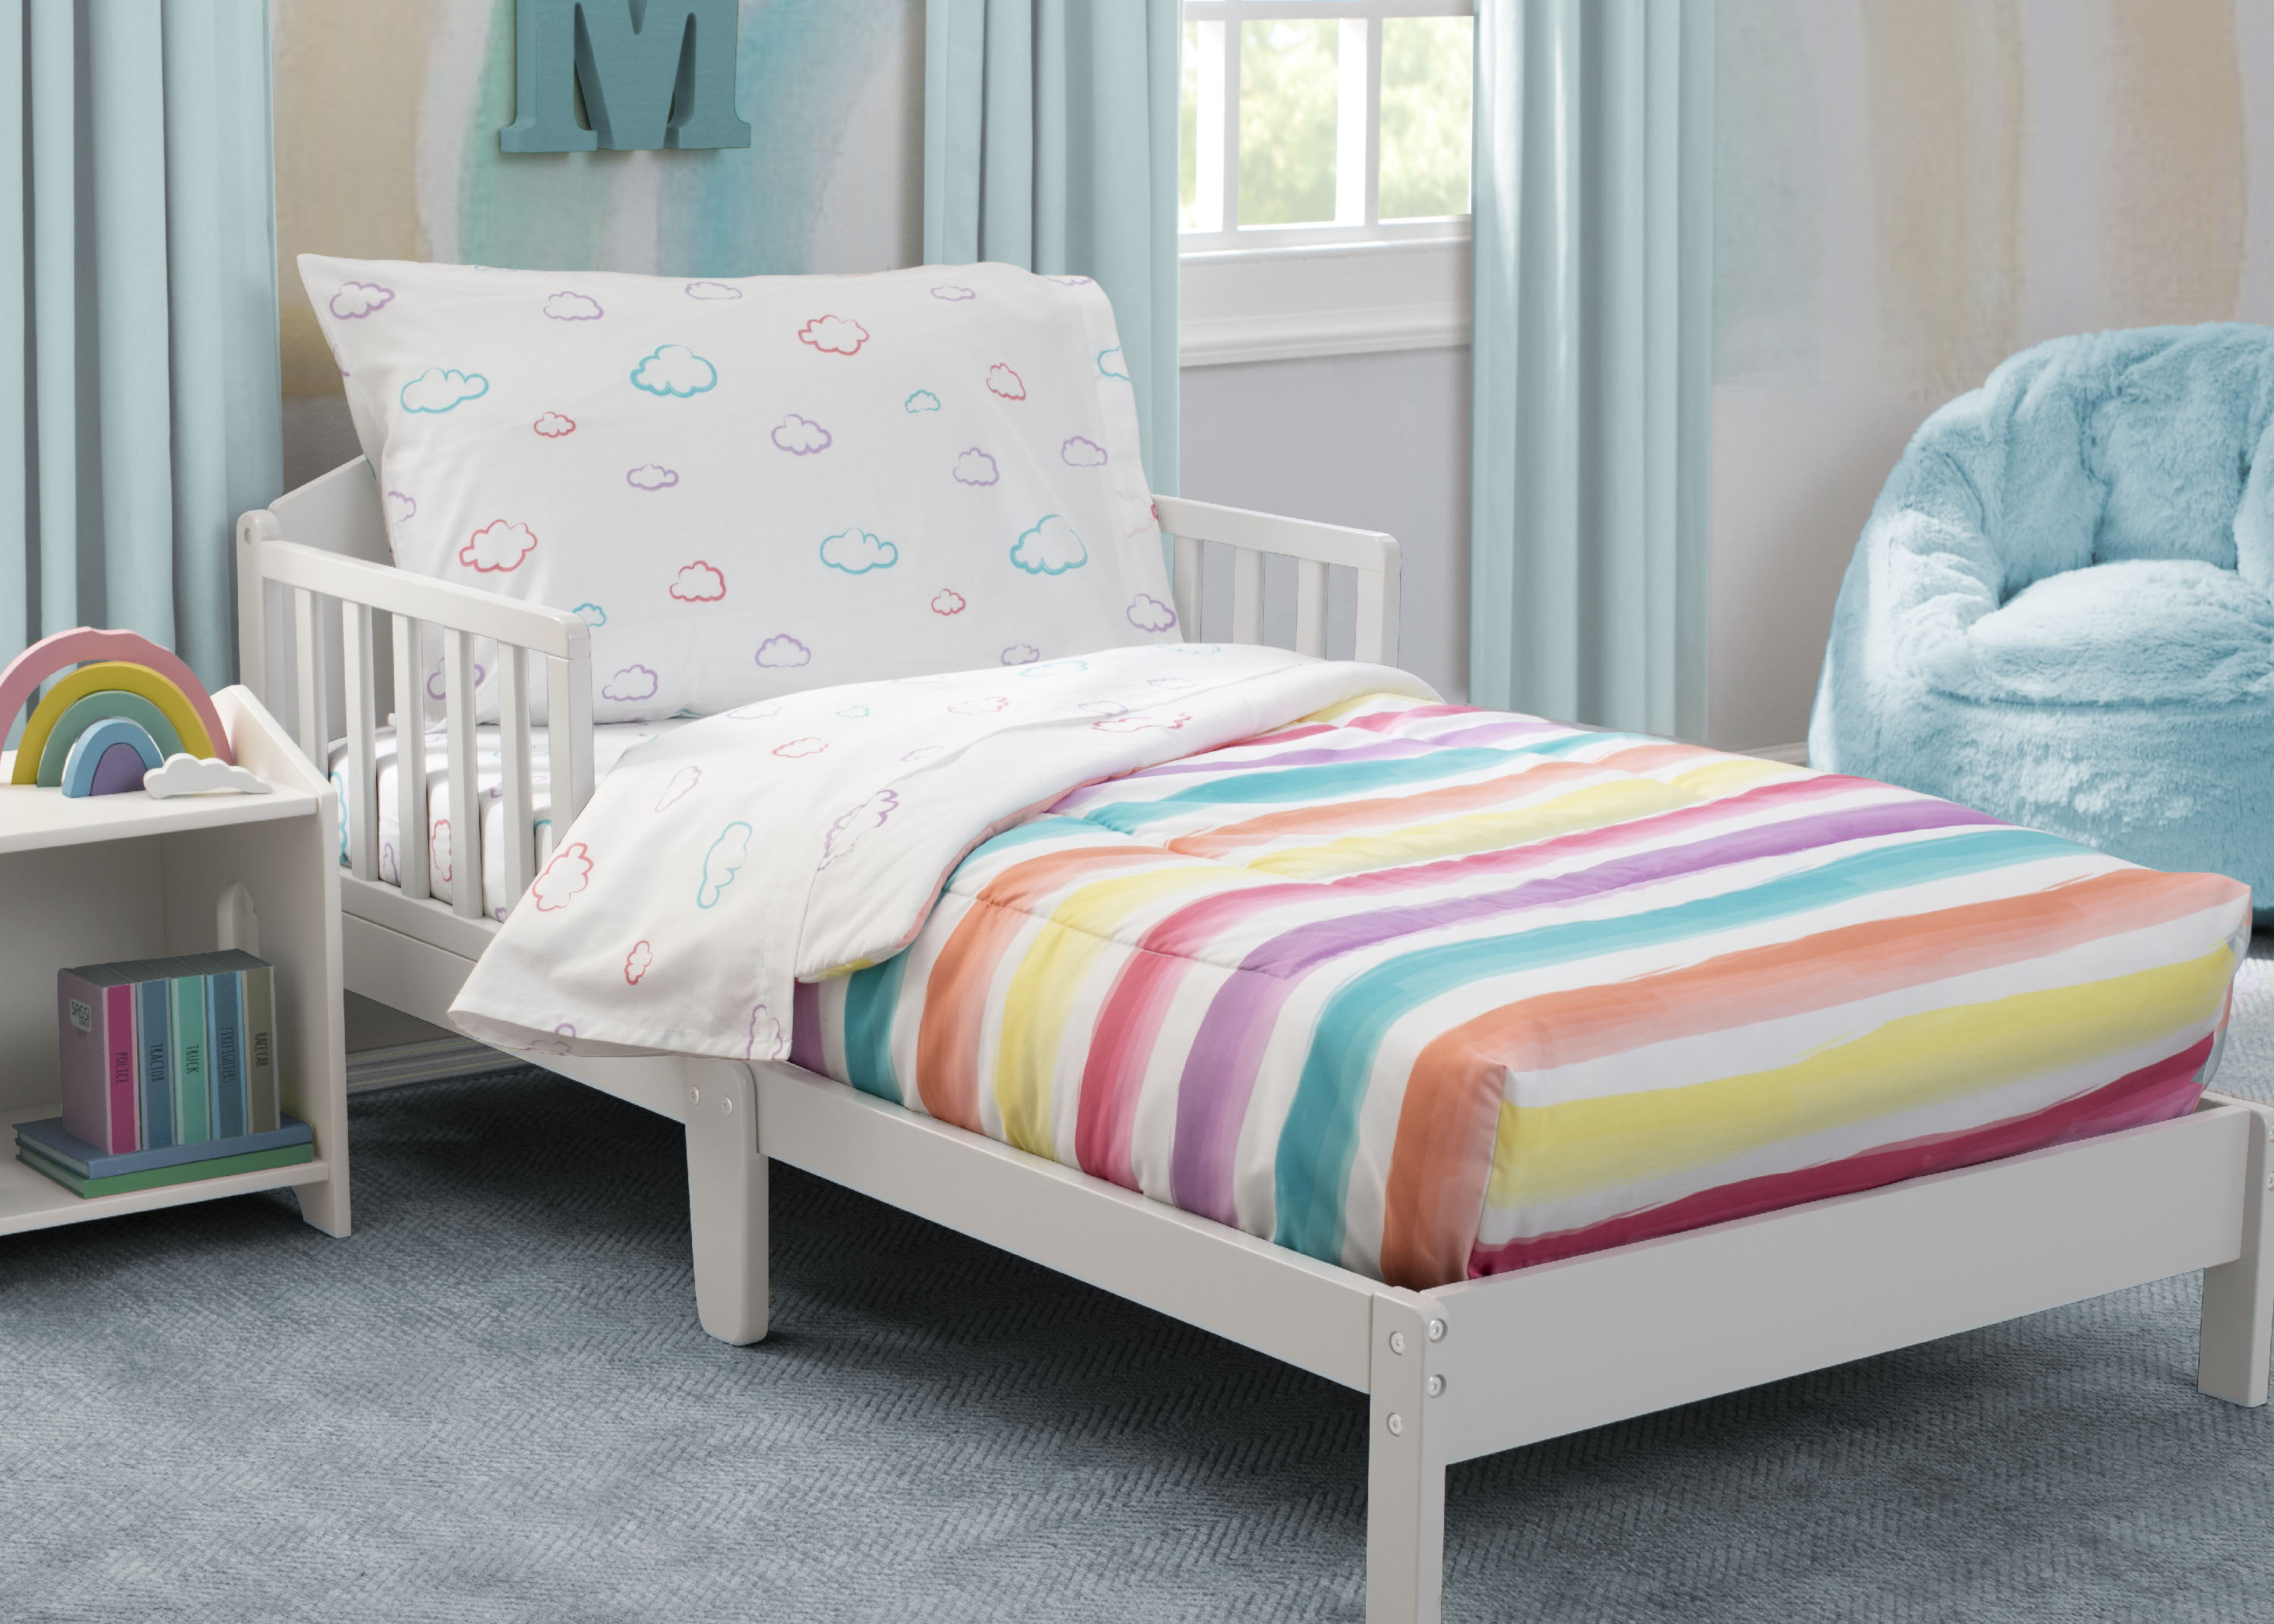 Grey Toddler Bed | Stars & Stripes Bedding Set | Storage Bins | Additional Sheet Set Boys 4-Piece Delta Children Toddler Bedroom Set 